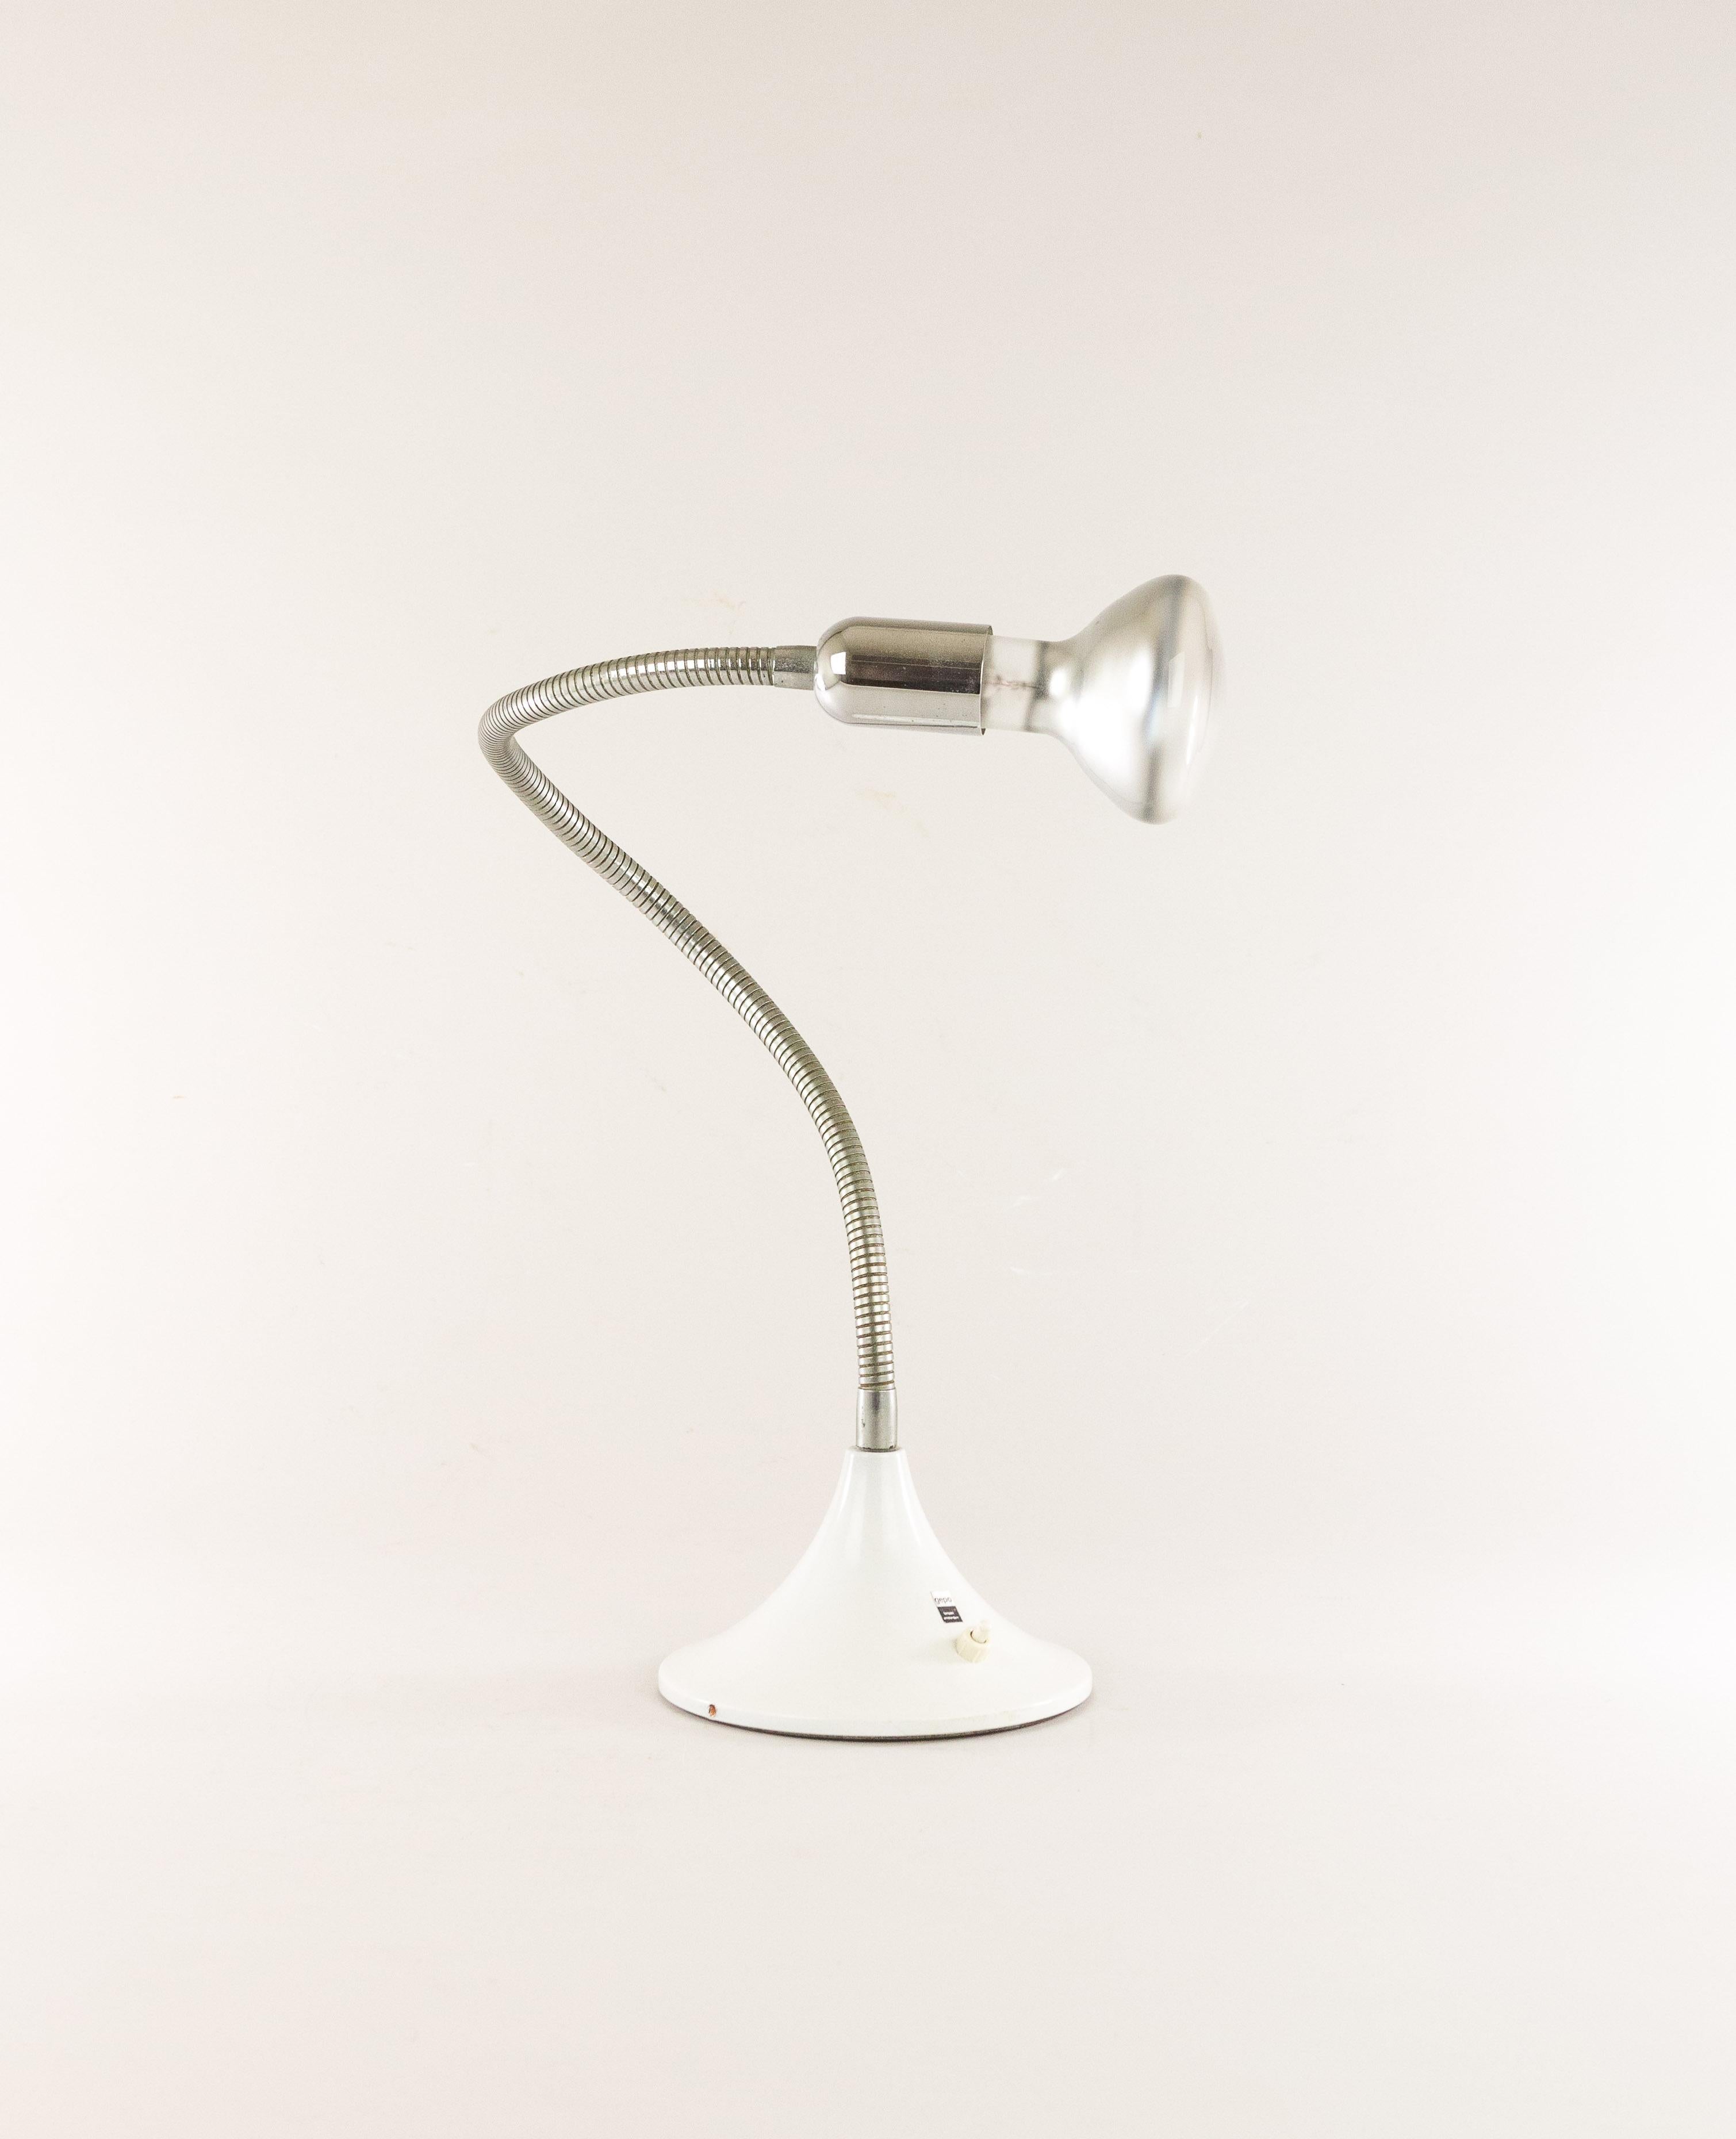 Lampe réglable de Gepo, datant probablement des années 1970. Comme on peut le voir sur les photos, la lampe peut être utilisée comme une lampe murale et comme une lampe de table.

Gepo est une entreprise familiale fondée en 1965 par quatre frères.